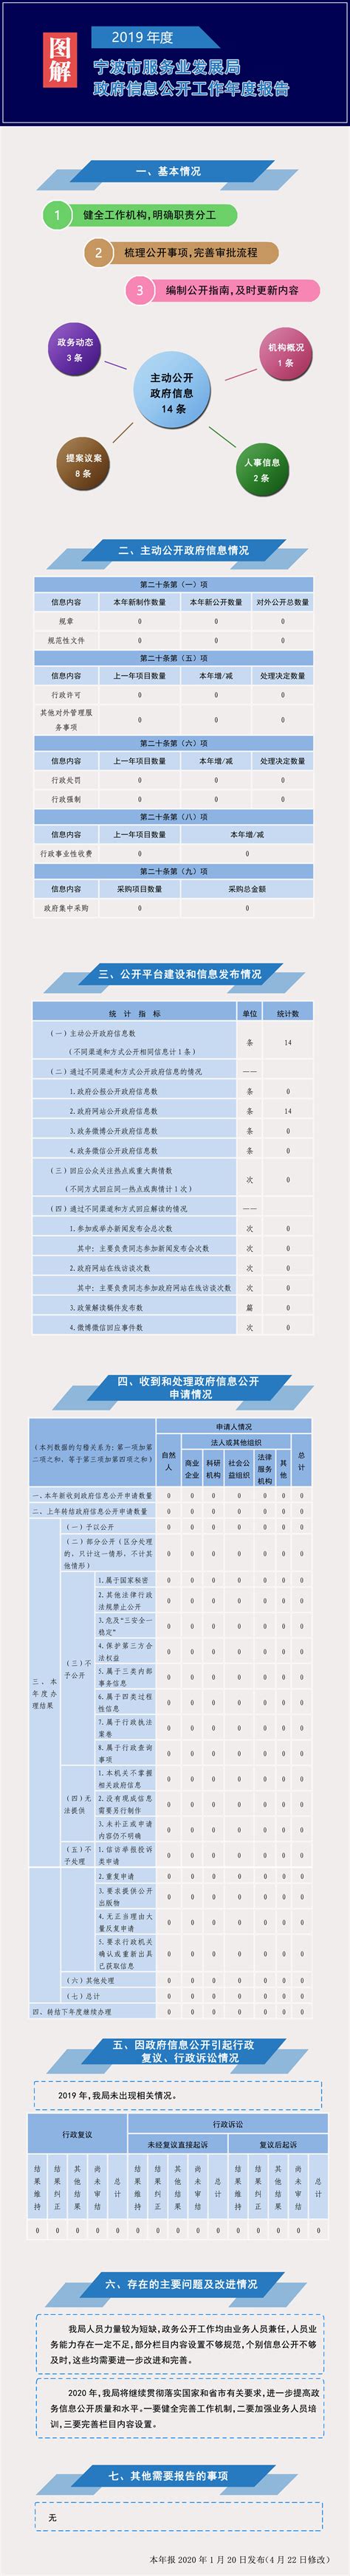 宁波市55个社区入选浙江省第六批未来社区创建名单